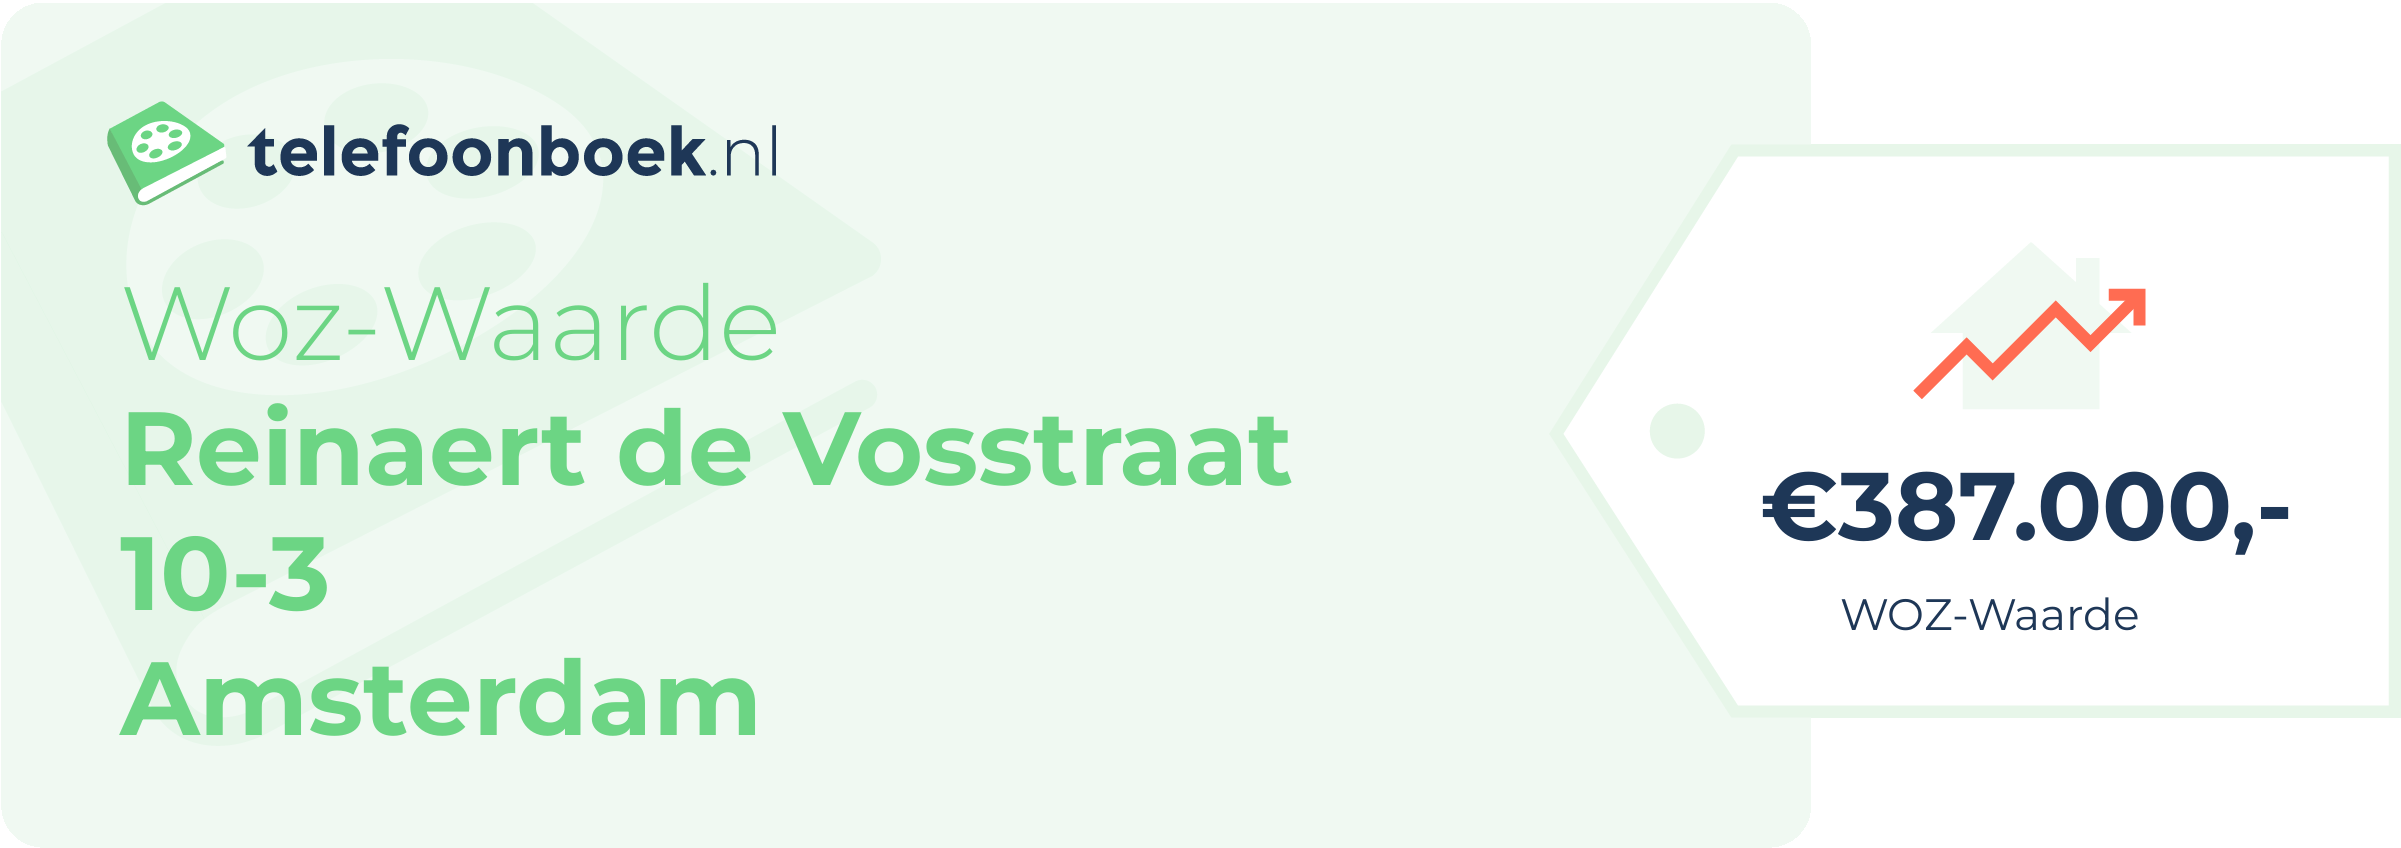 WOZ-waarde Reinaert De Vosstraat 10-3 Amsterdam